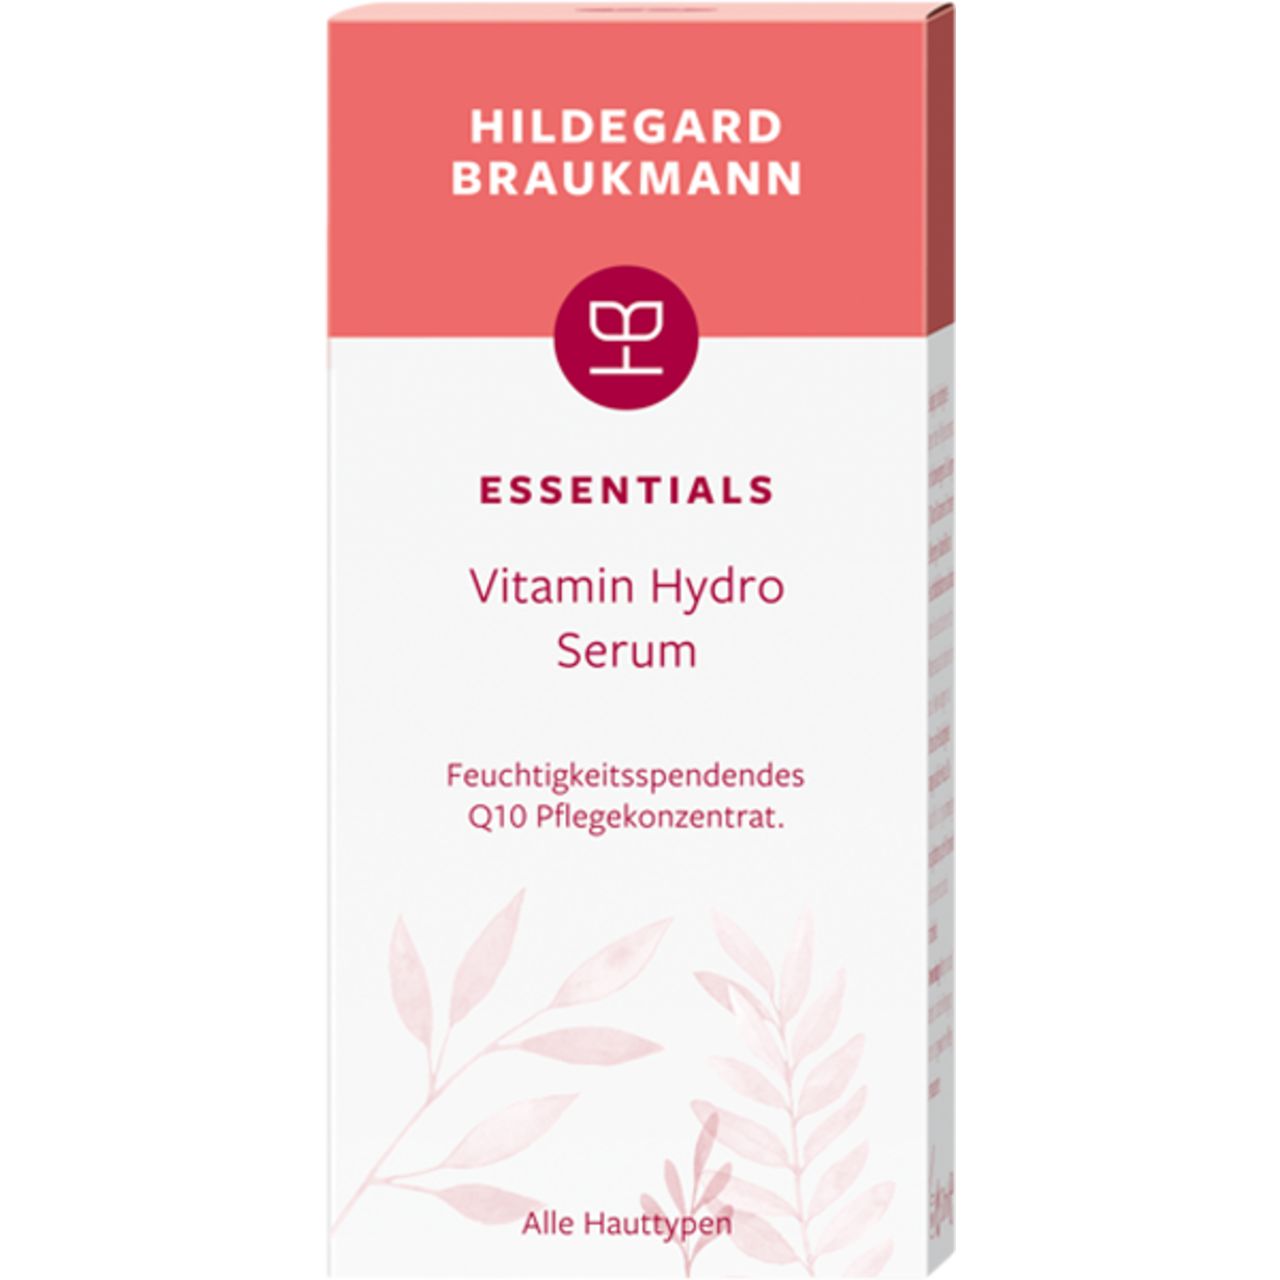 Hildegard Braukmann, Essentials Vitamin Hydro Serum